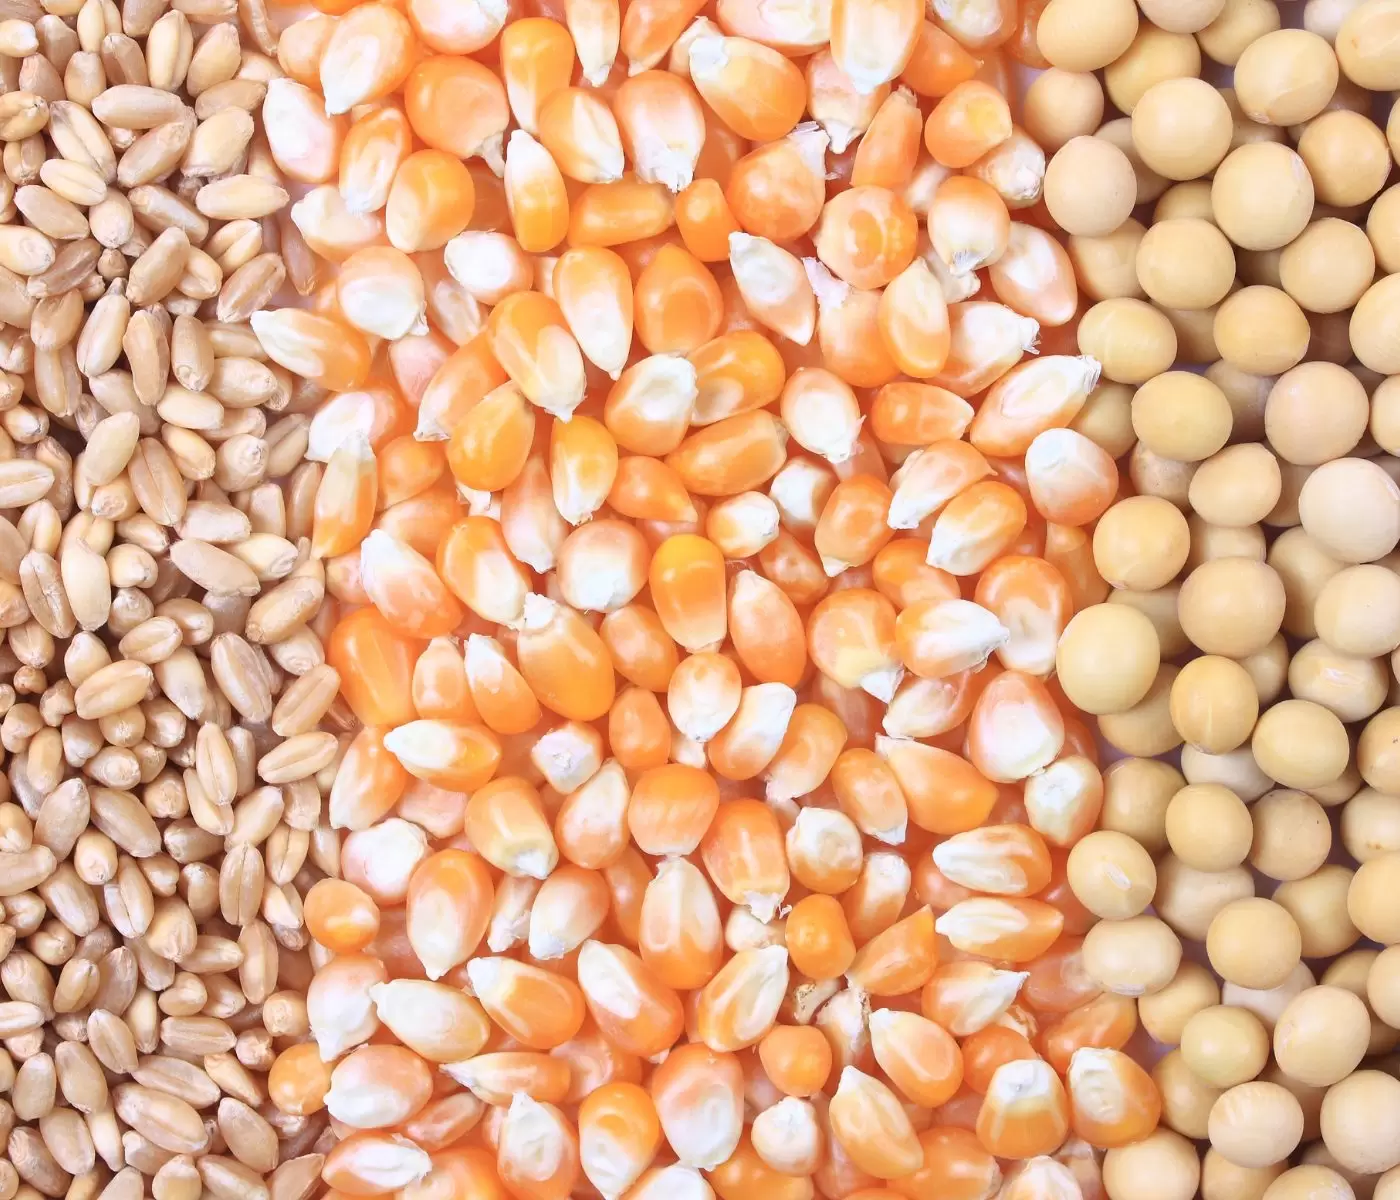 المجلس الدولي للحبوب يرفع توقعاته للإنتاج العالمي فول الصويا ويخفض الذرة والقمح في العام المحصولي 2024-25